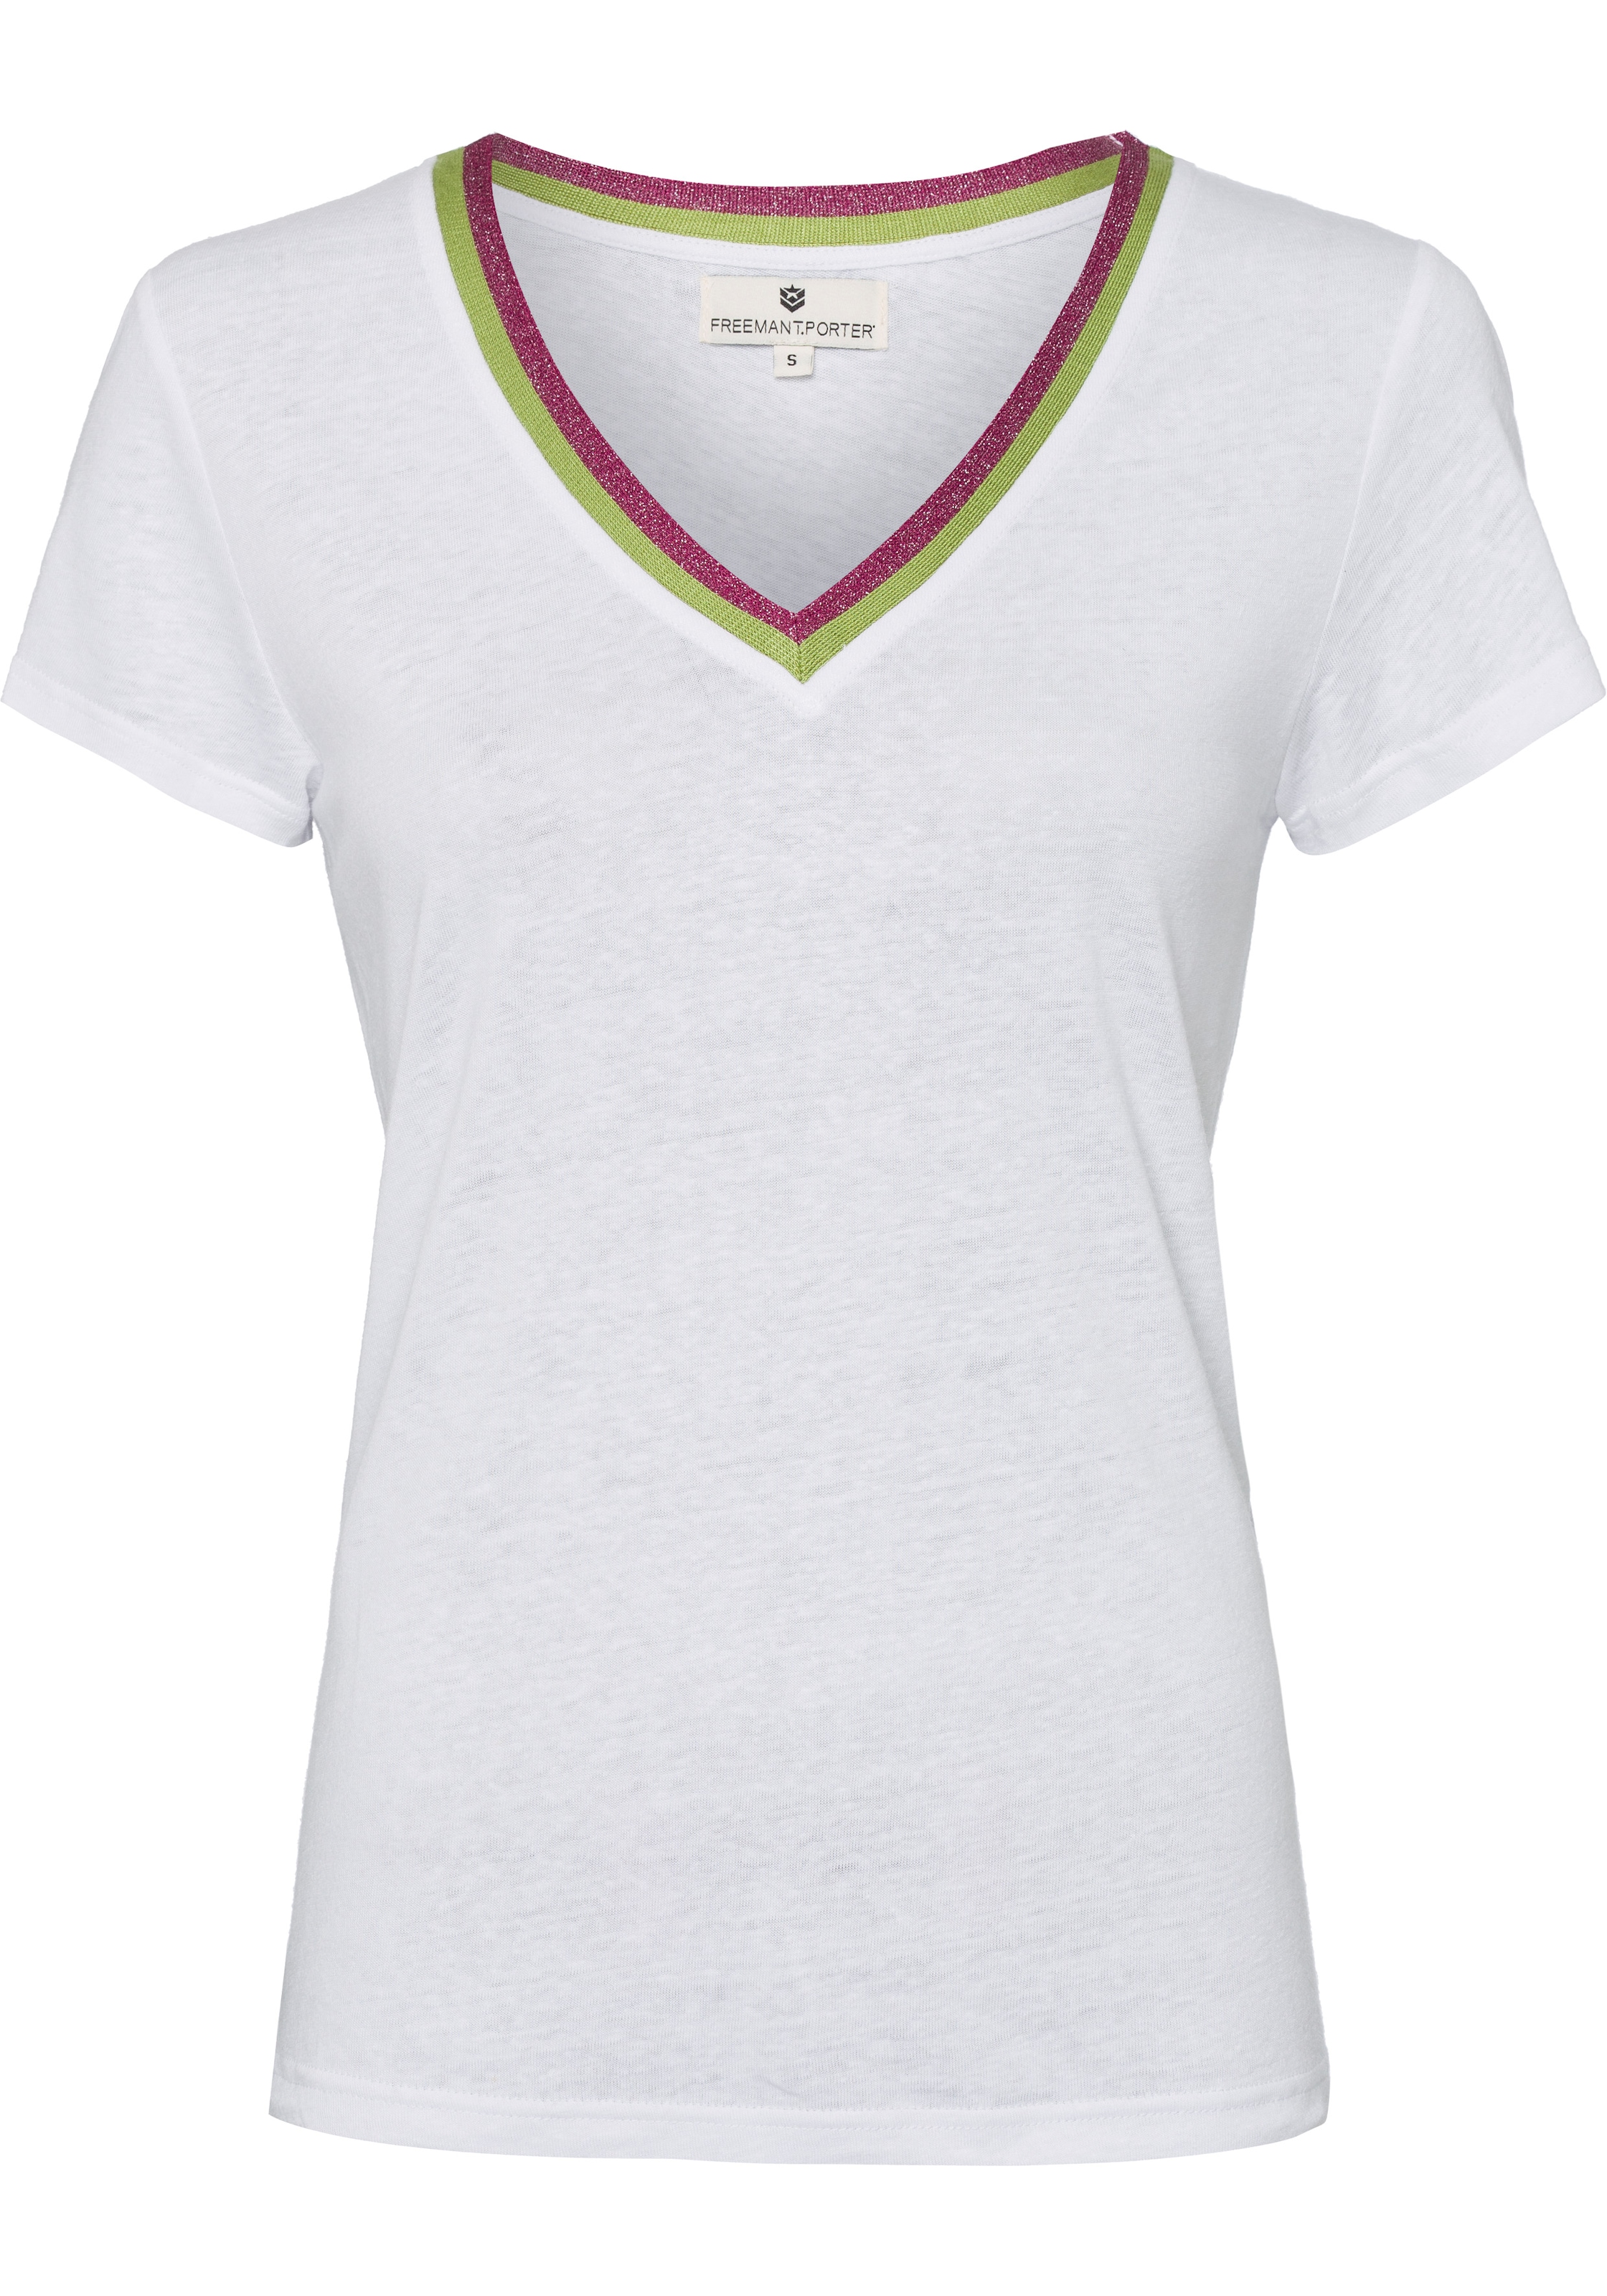 Freeman T. Porter T-Shirt, (1 tlg.), mit Streifenbündchen im Retro-Look